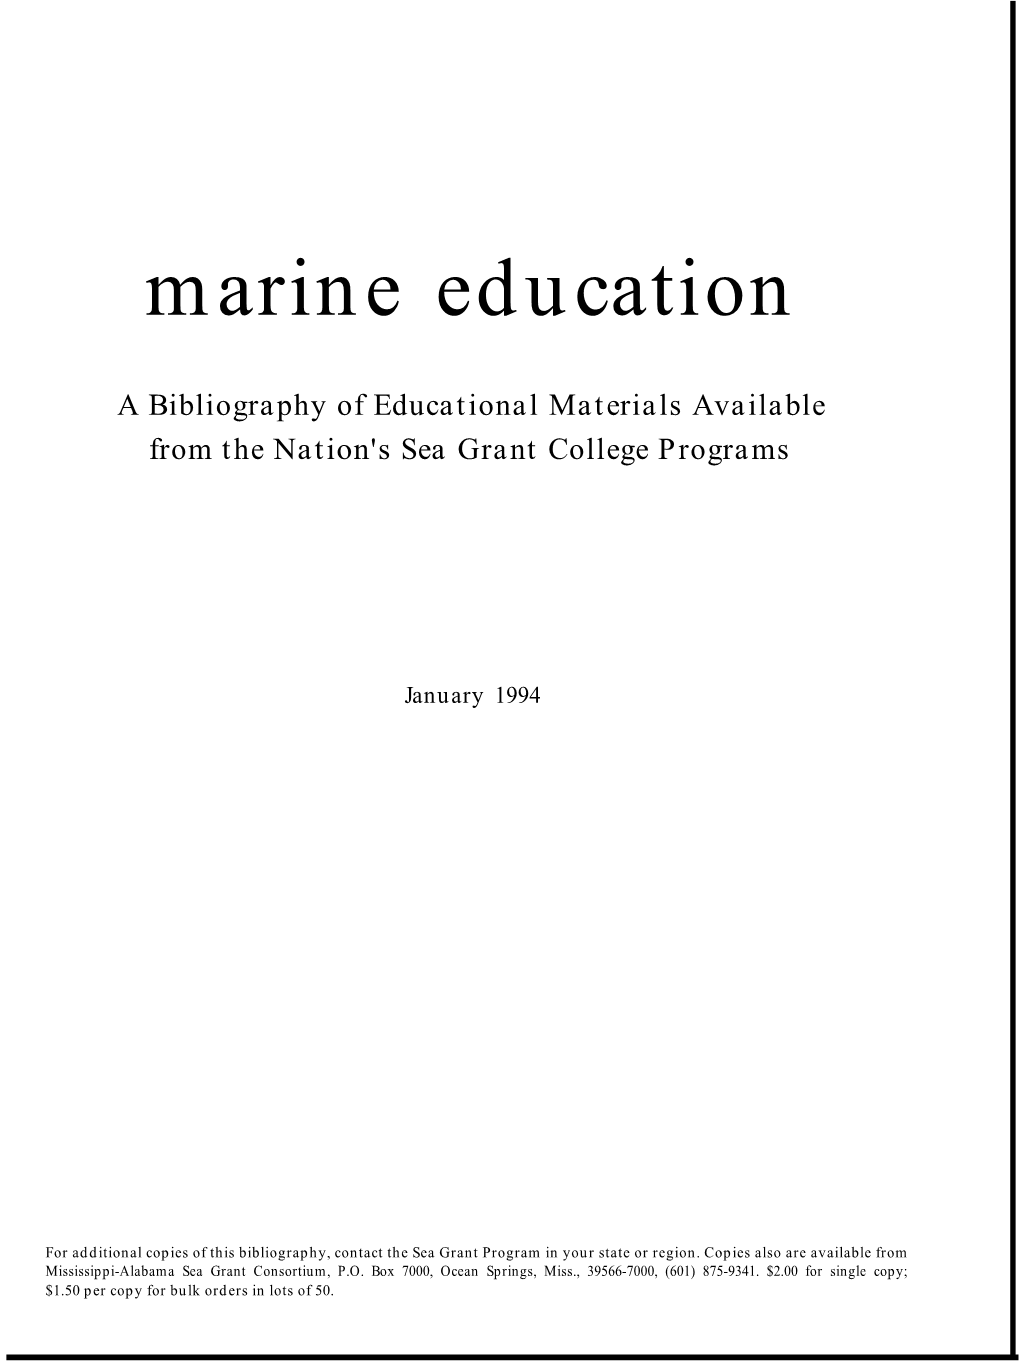 Marine Education